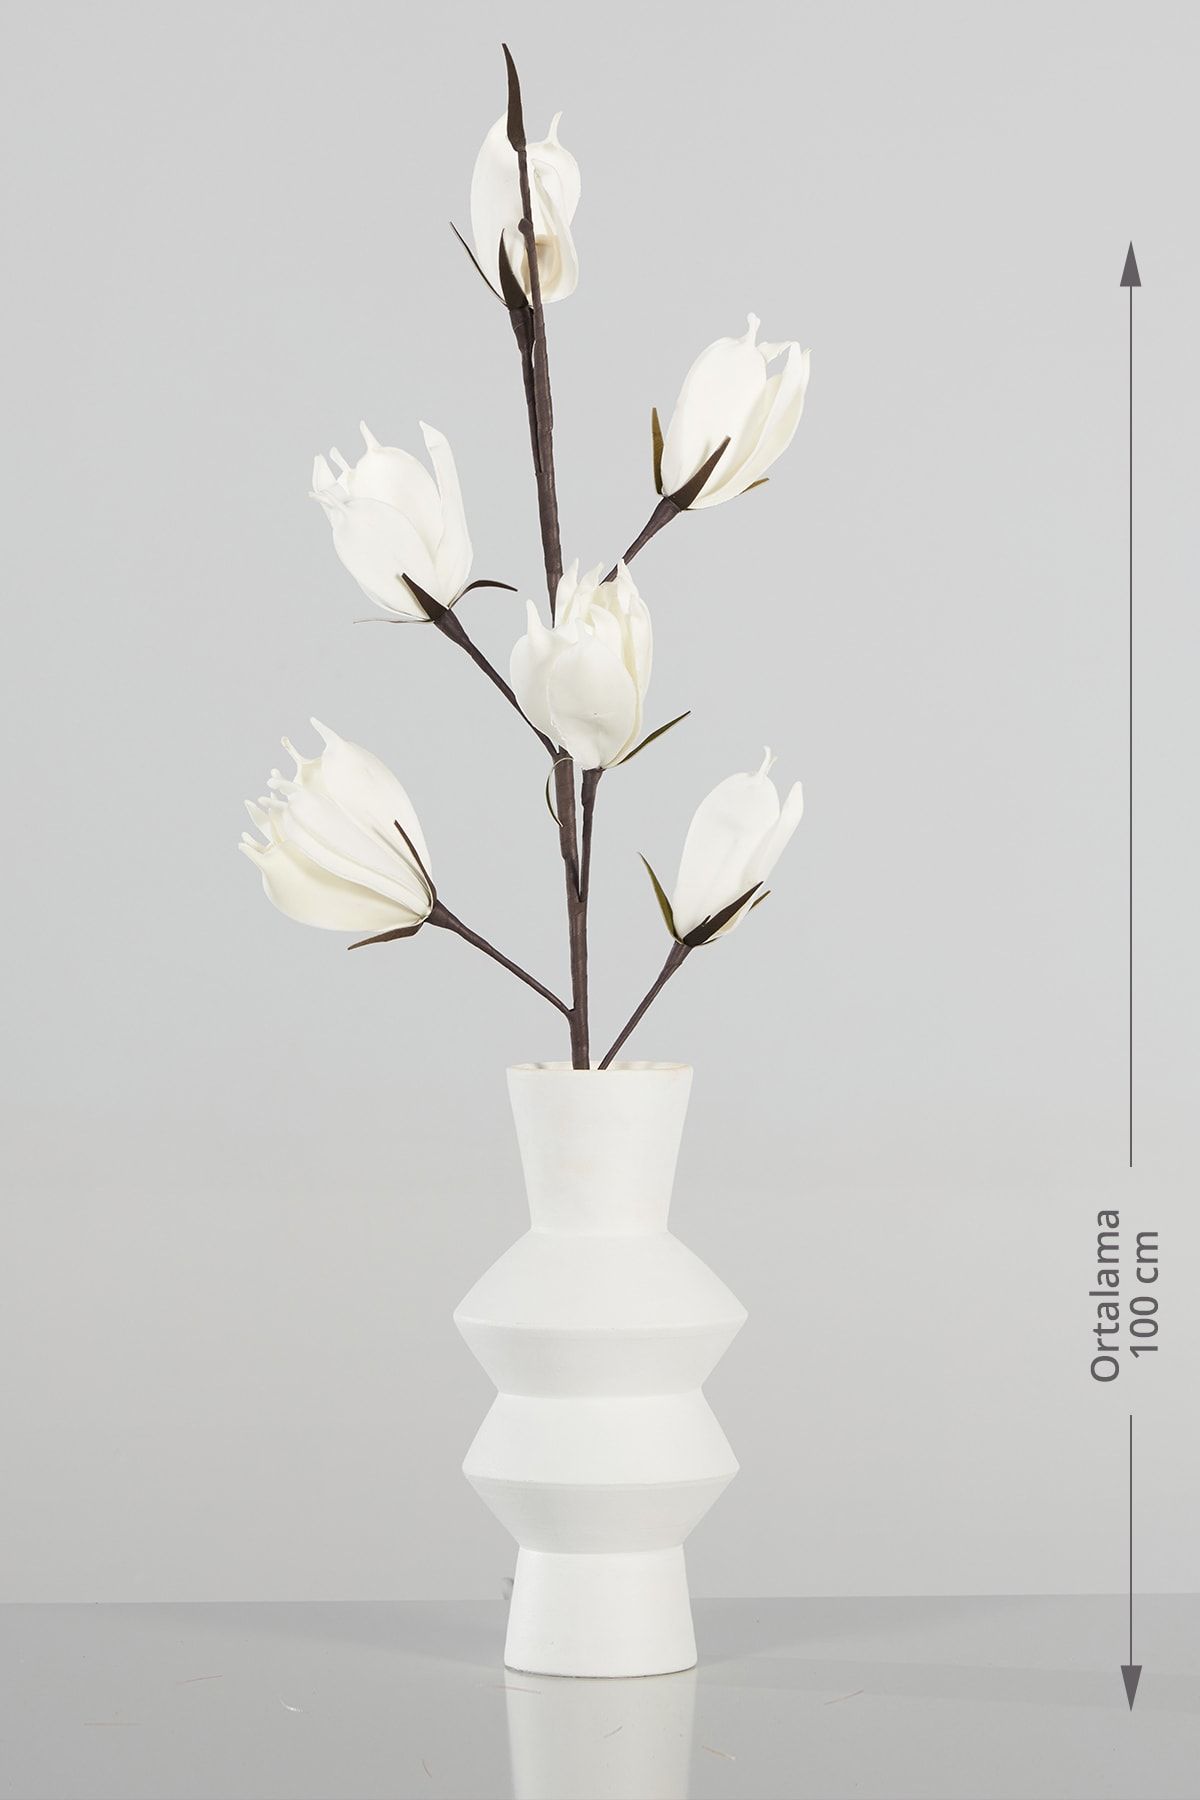 Doqu Home Beyaz Manolya Yapay Çiçek - Ev & Ofis Dekorasyonu - Hediyelik Çiçek - Dekor Çiçek - A01 Lkm18-065 St